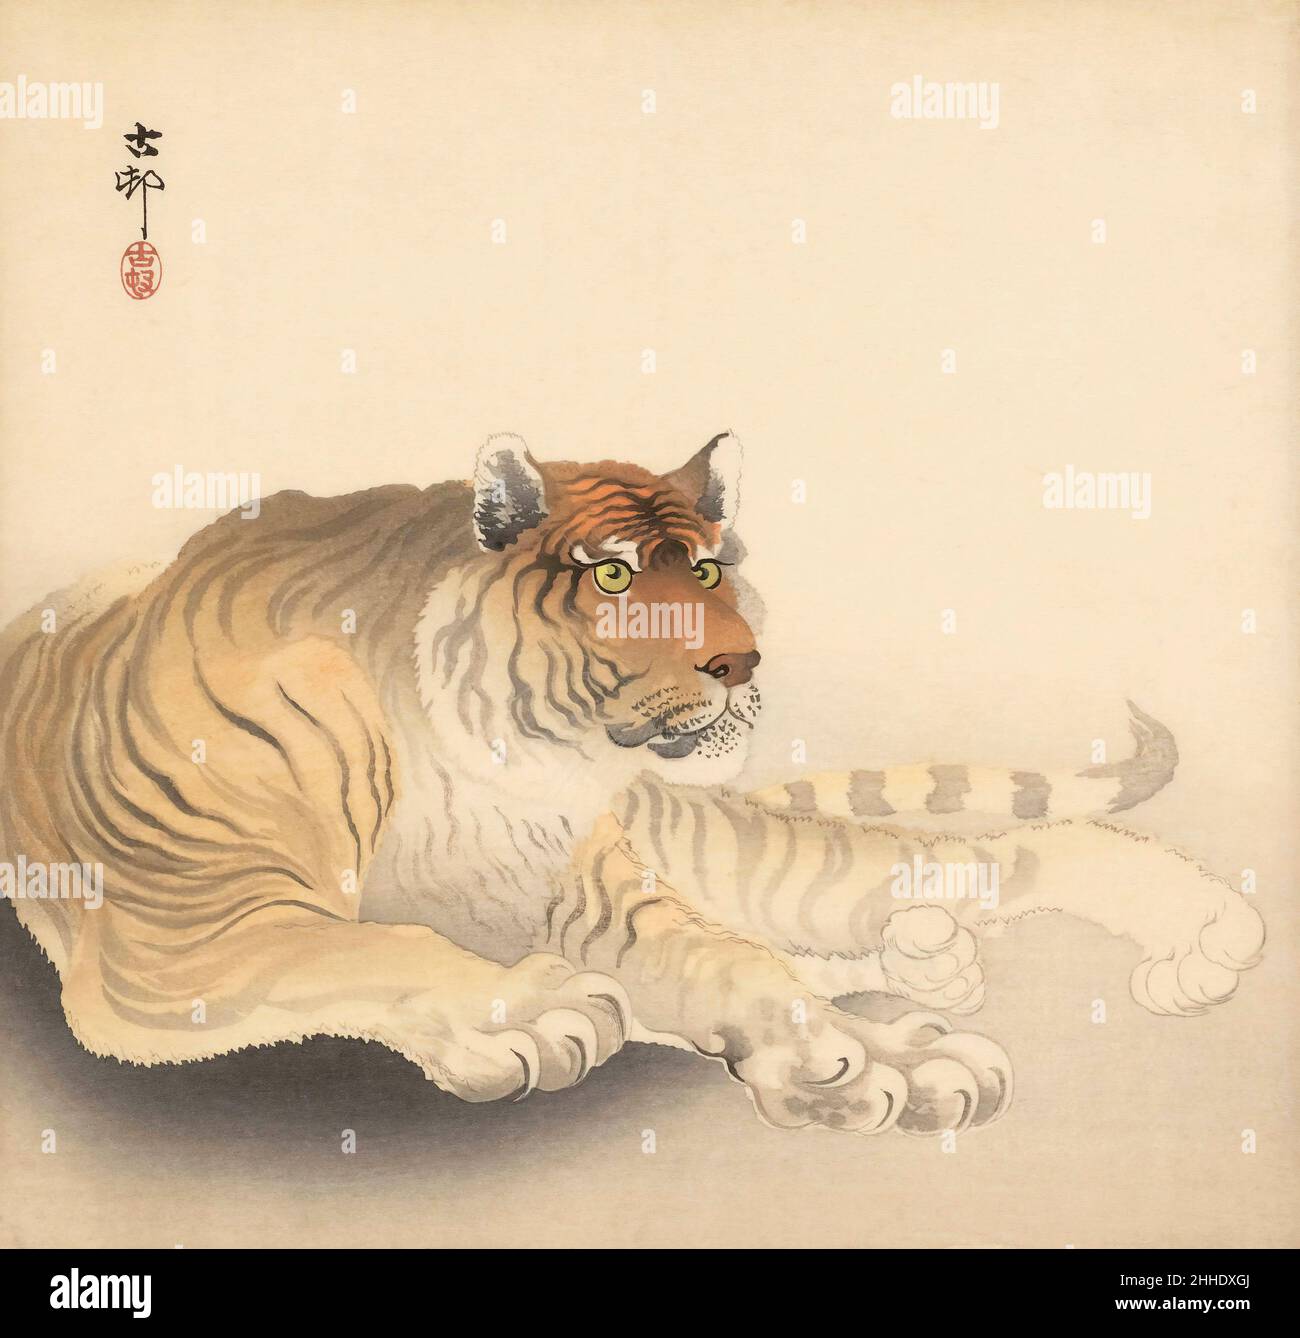 Tiger dell'artista giapponese Ohara Koson, 1877 - 1945. Ohara Koson faceva parte dello shin-hanga, o del movimento delle nuove stampe. Foto Stock